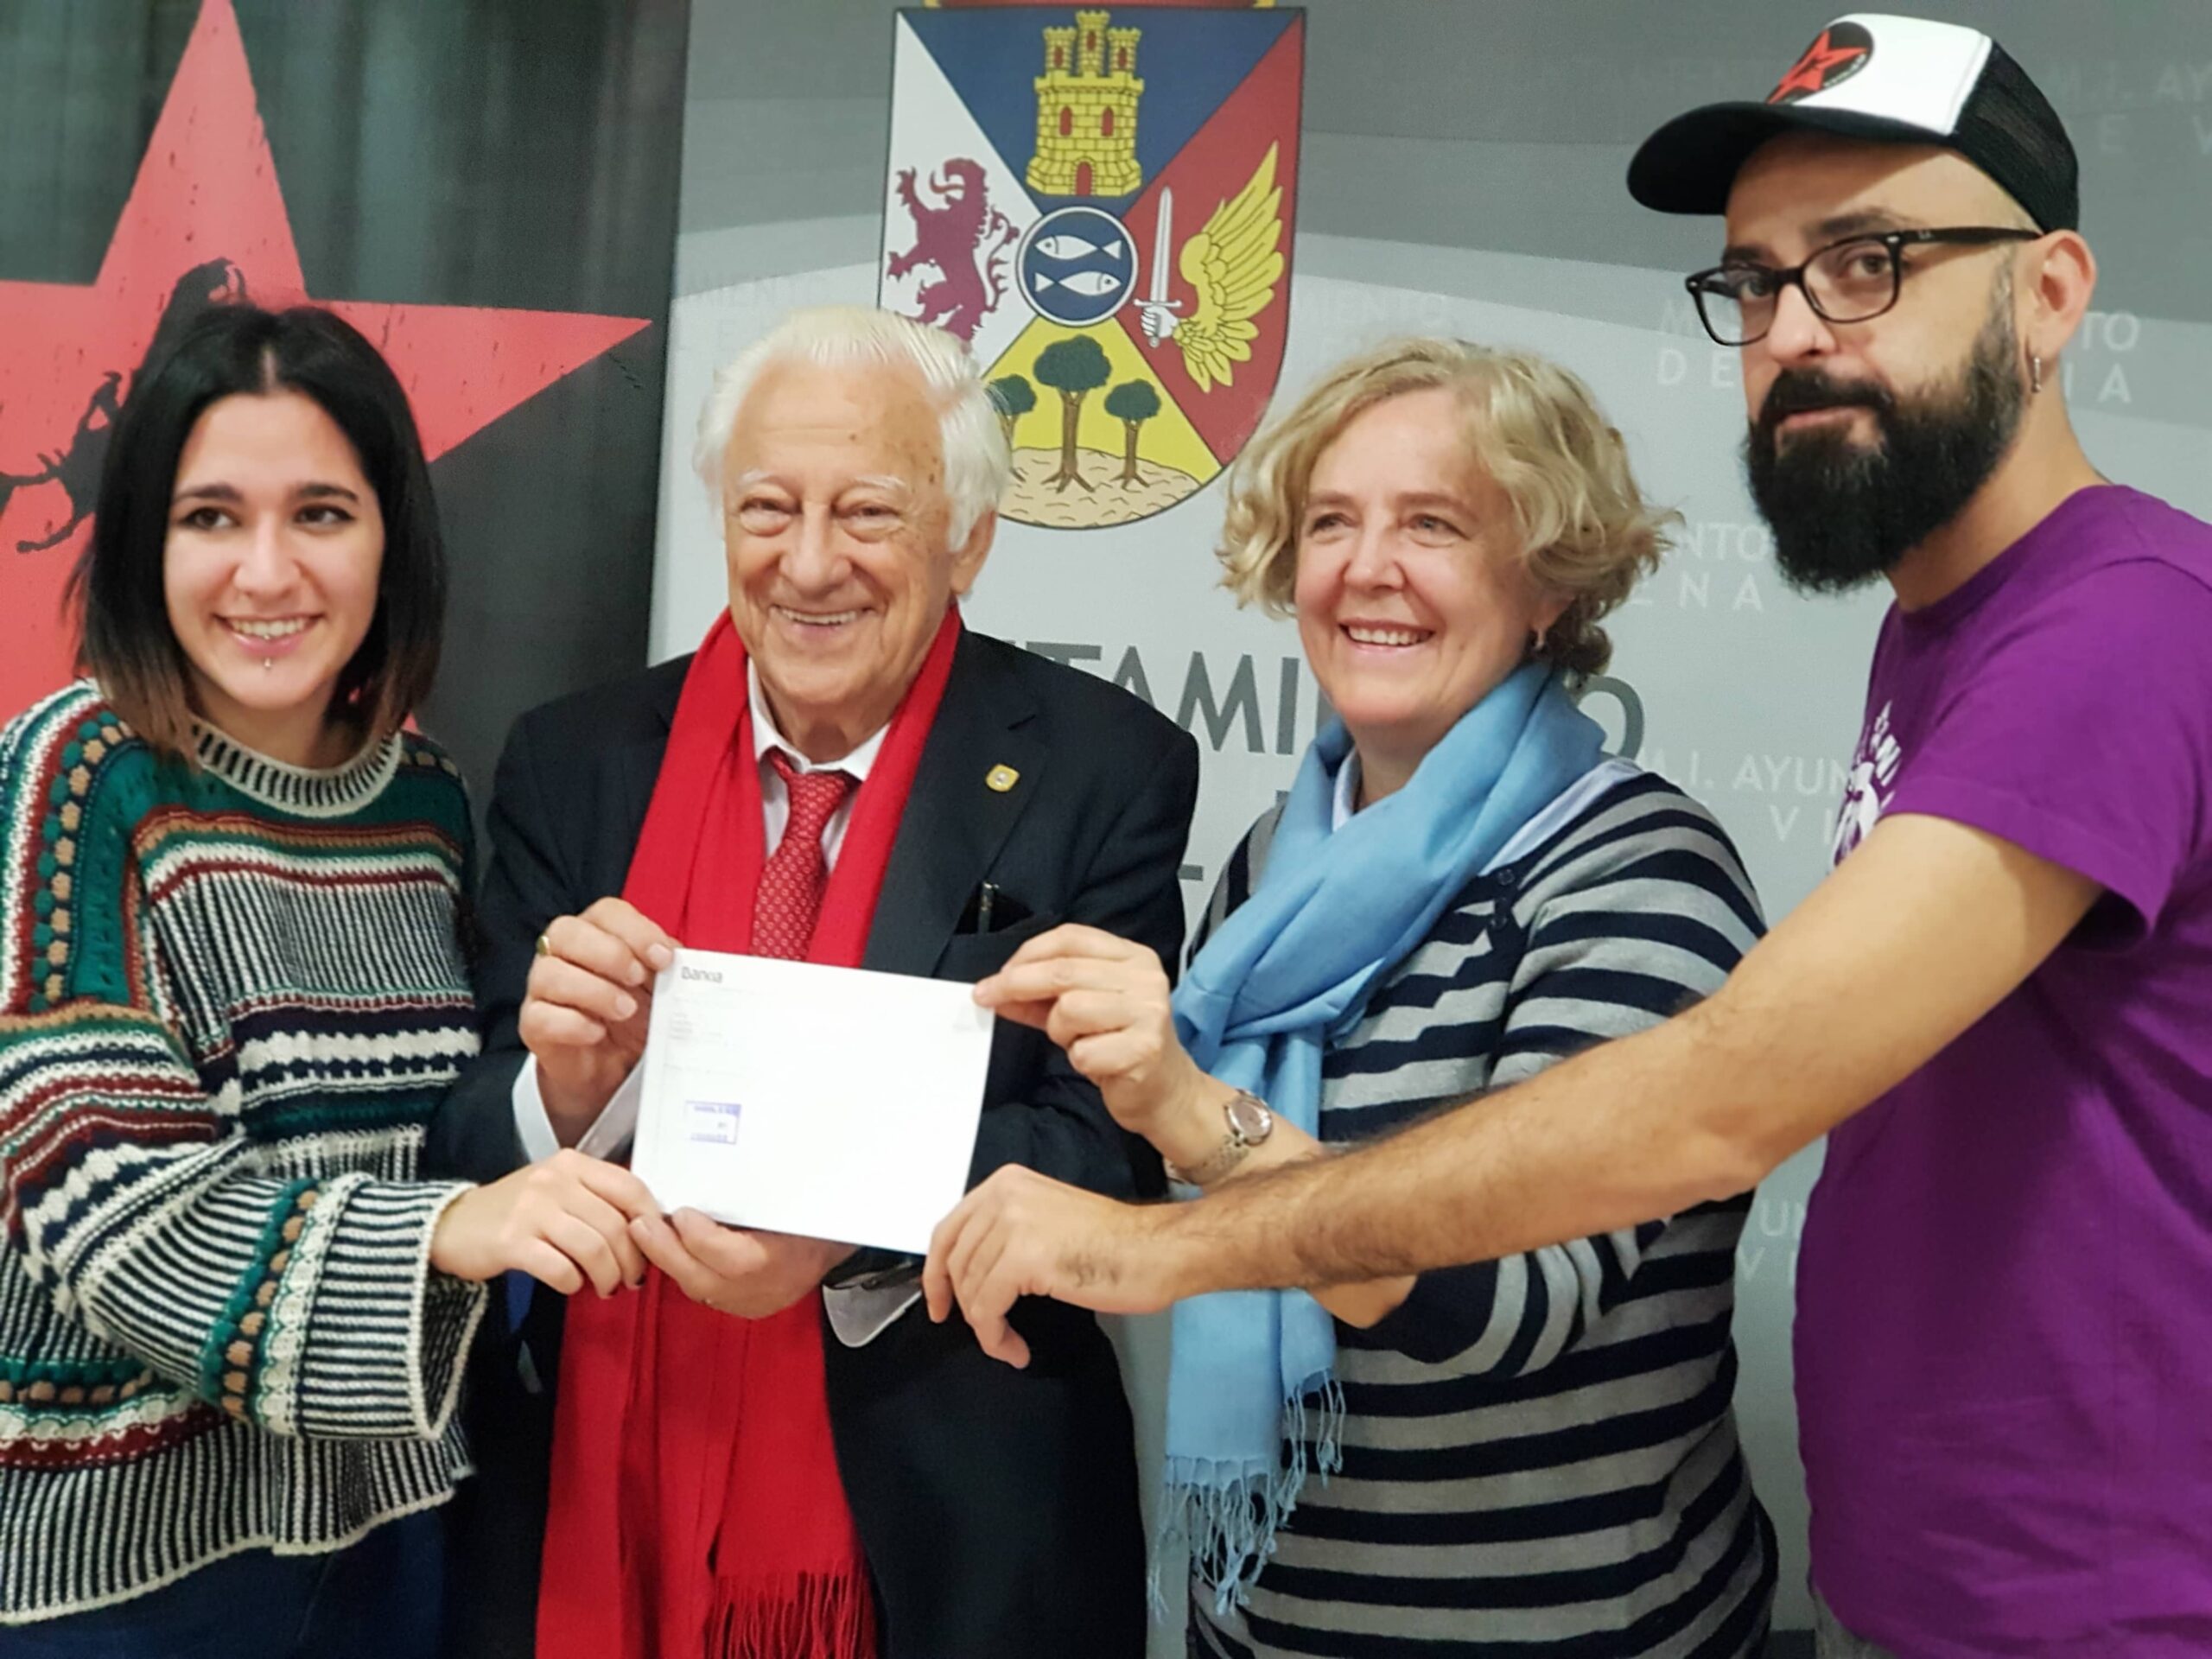 Donan 1680 euros a Mensajeros de la Paz para la lucha contra la violencia de género